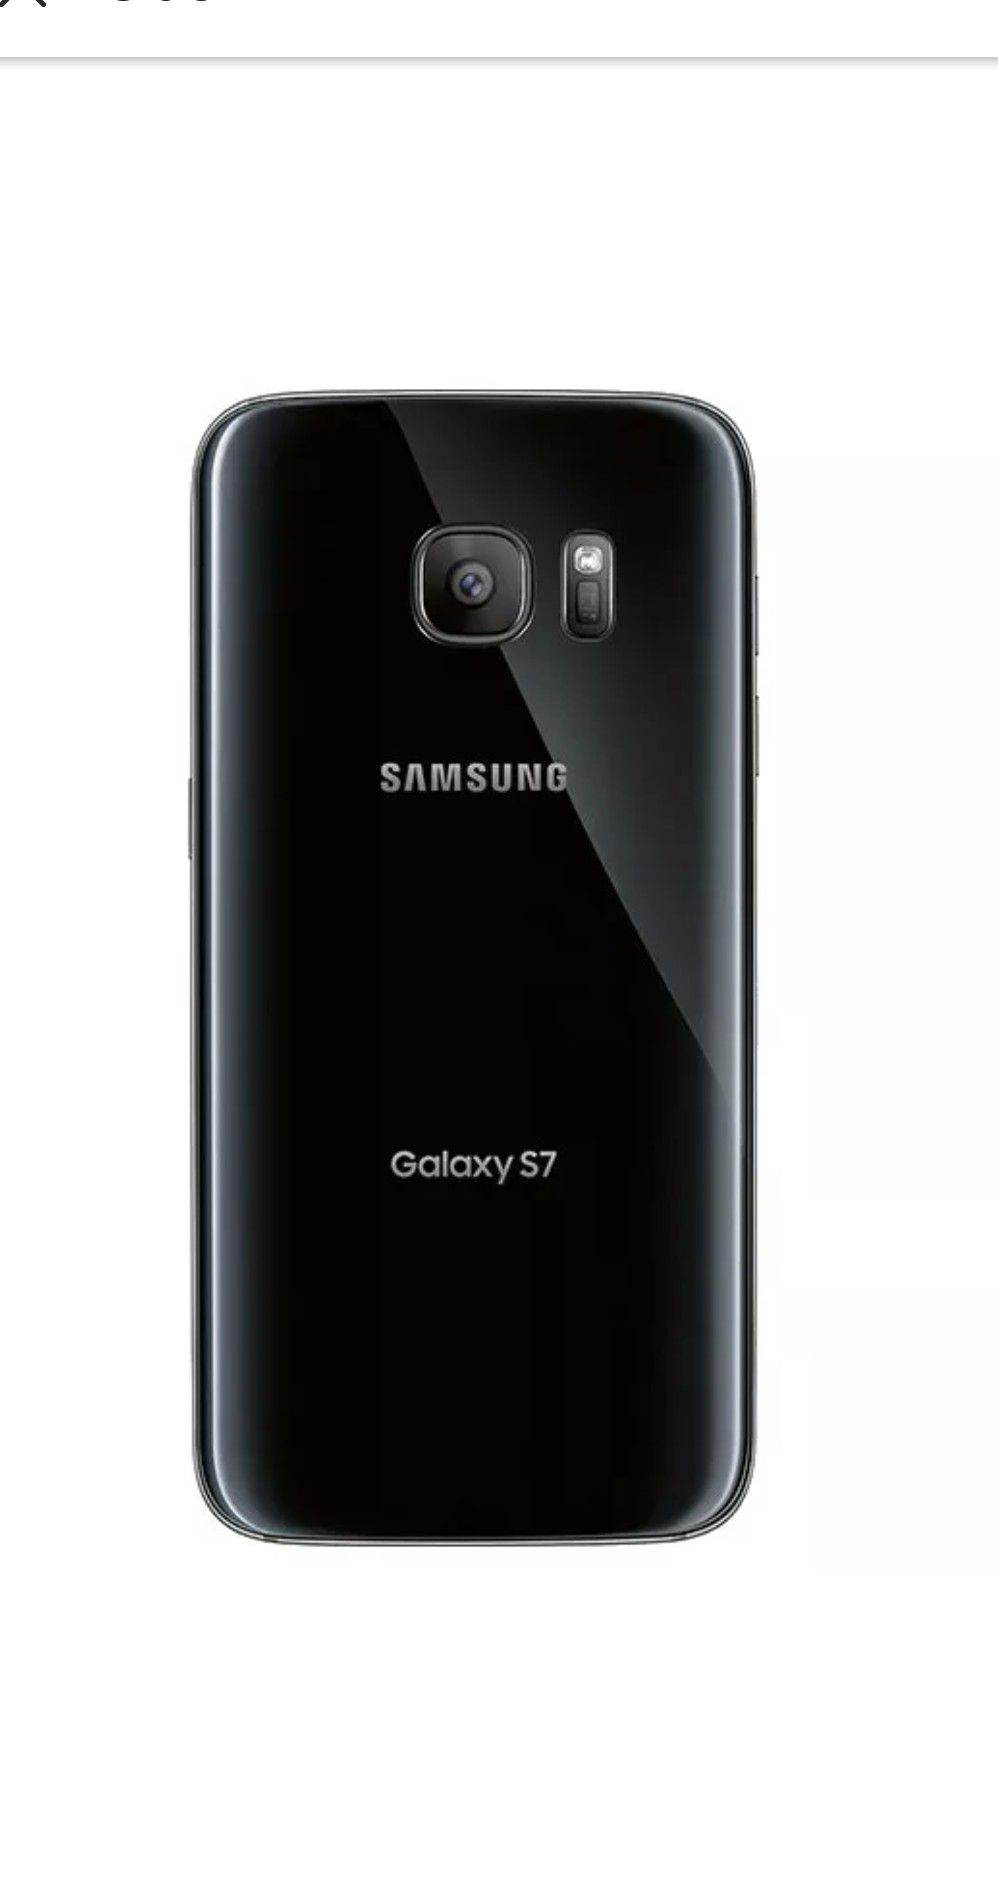 Samsung galaxy S7 32G unlocked excellent condition.... Desbloqueado en excelente condición